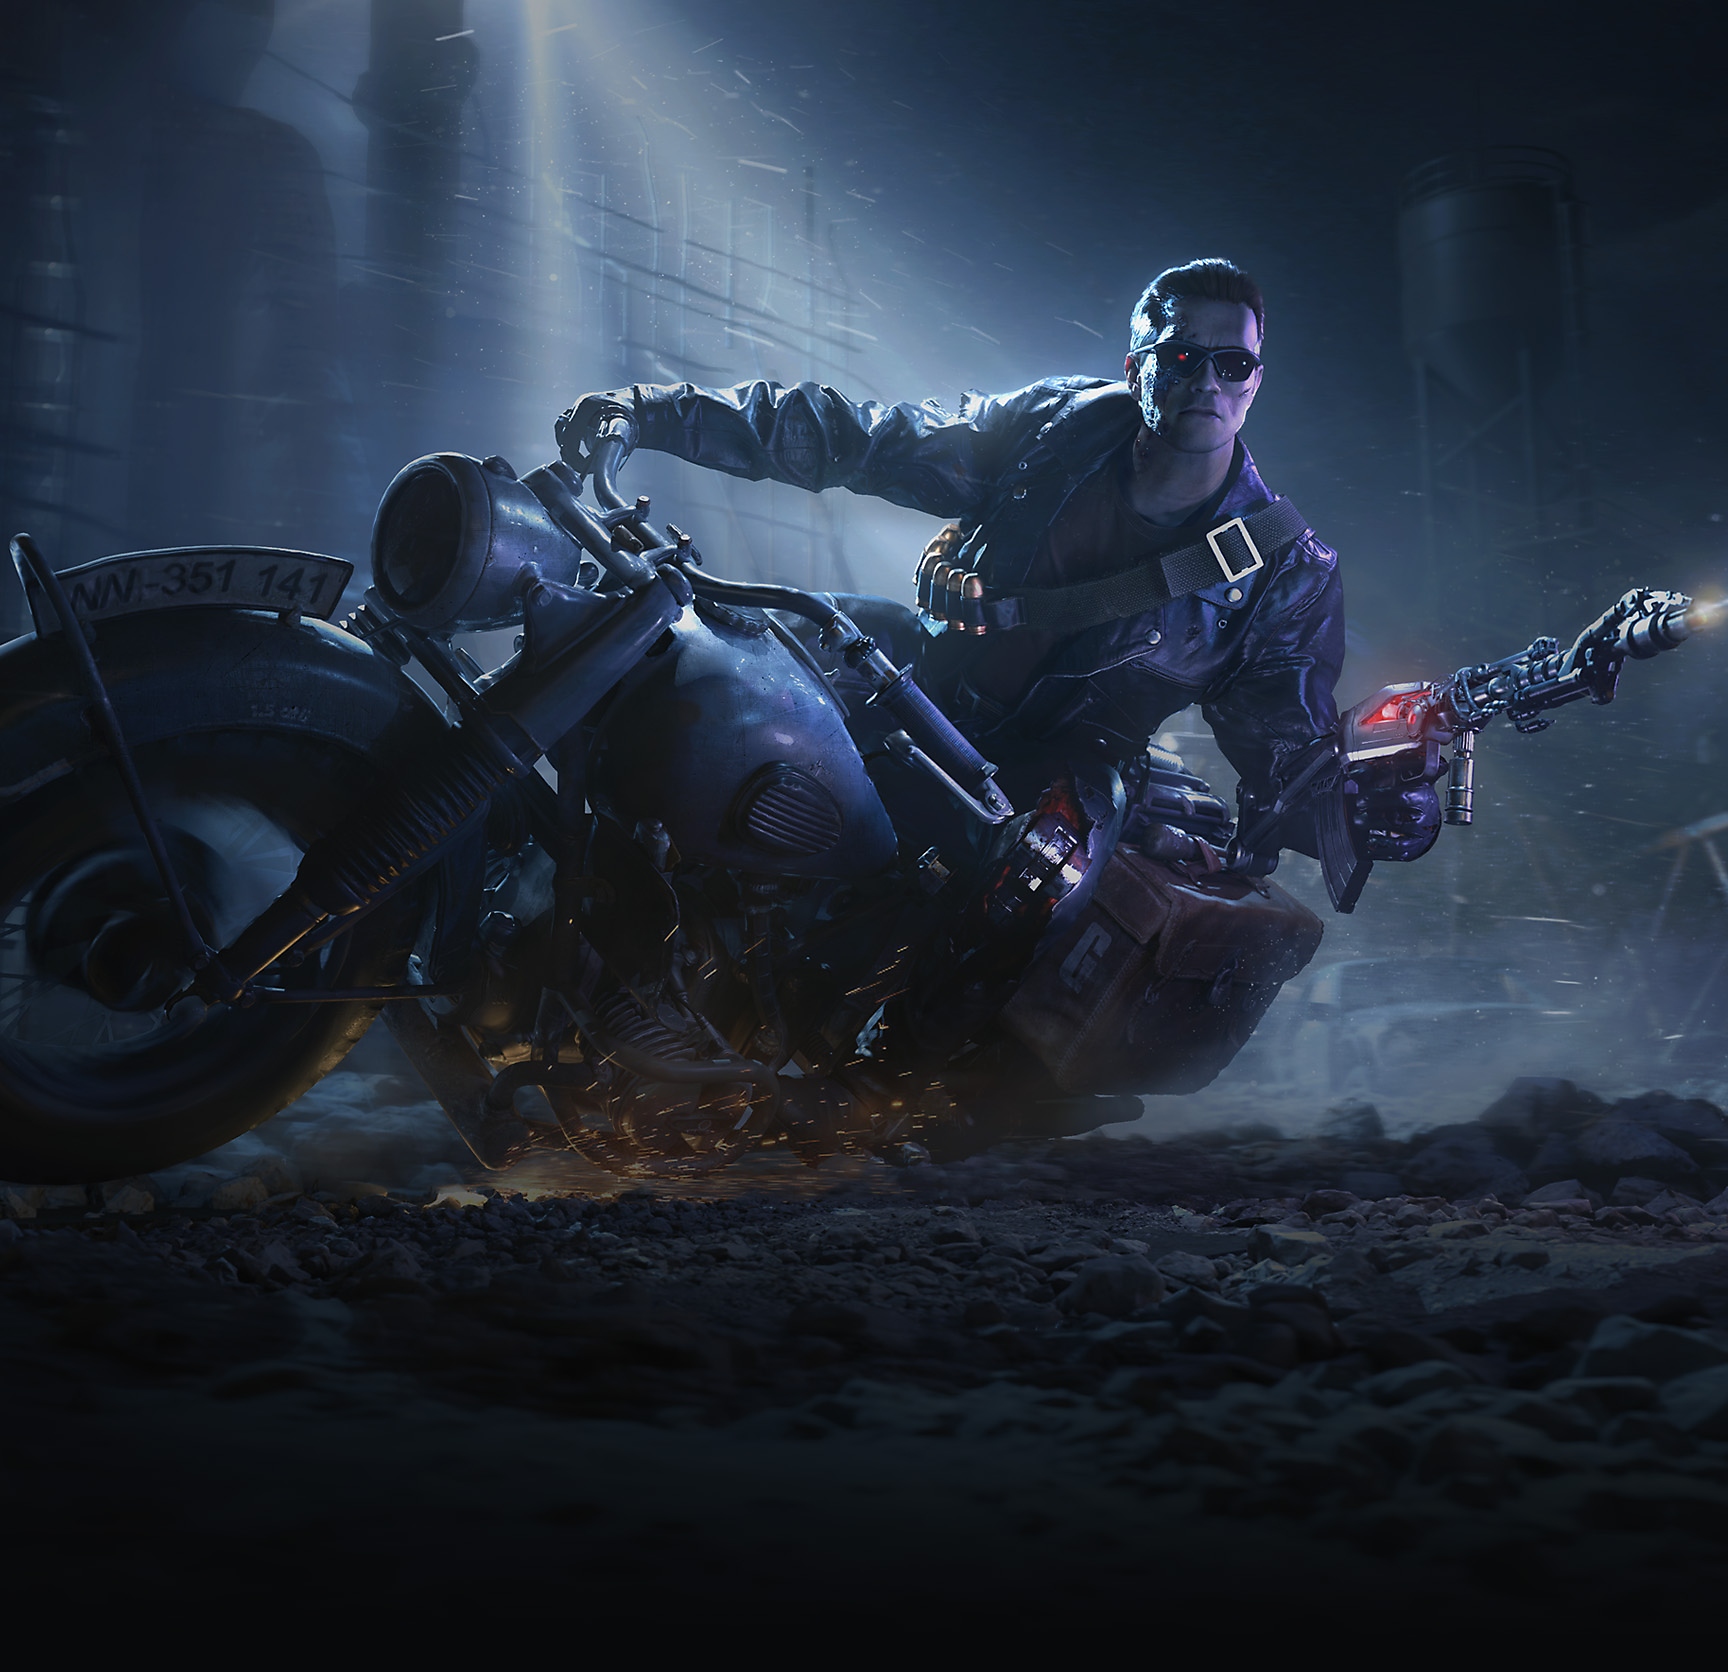 Pachete cu valabilitate limitată T-800 - Ilustrație care îl prezintă pe Terminator T-800 mergând pe o motocicletă